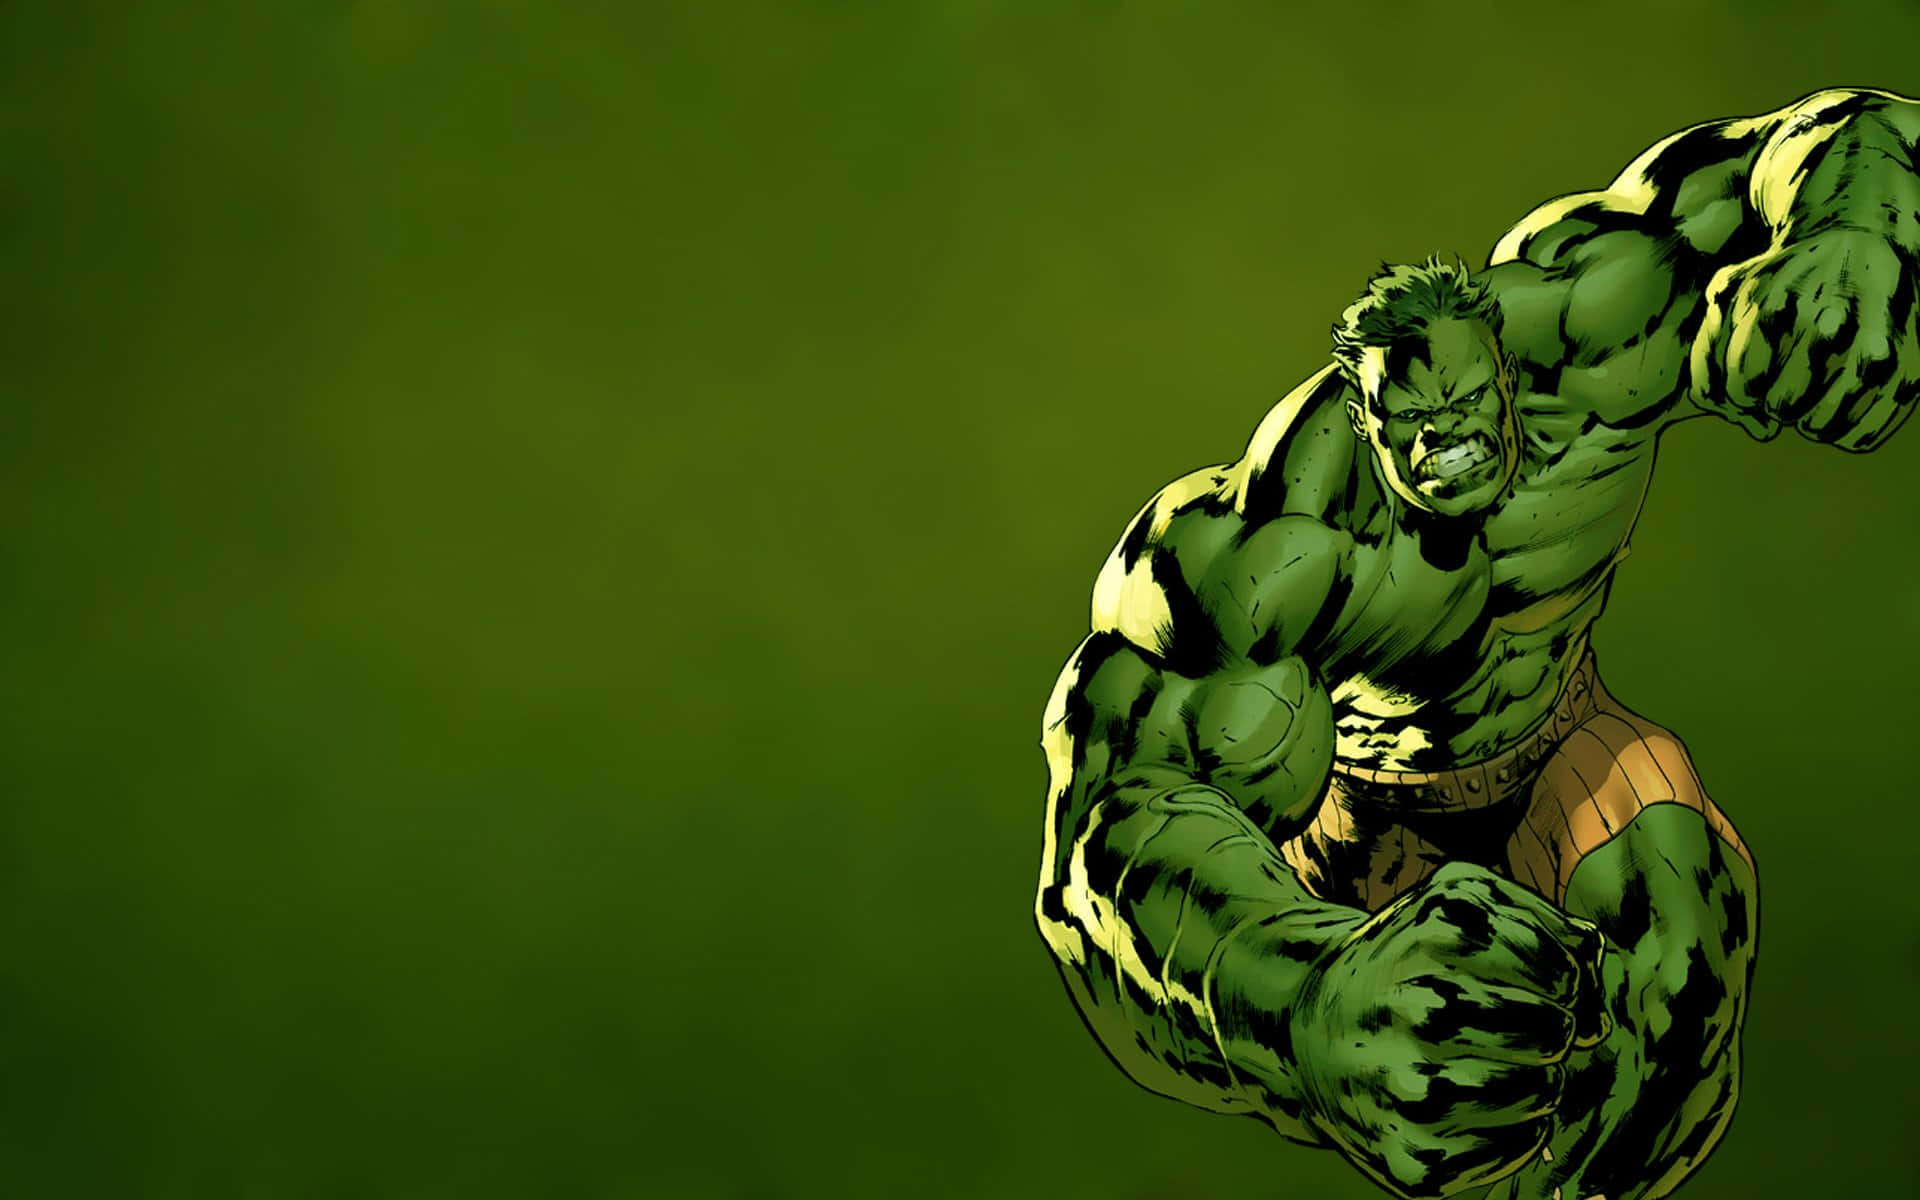 Oincrível Hulk, Pronto Para Liberar Sua Fúria.